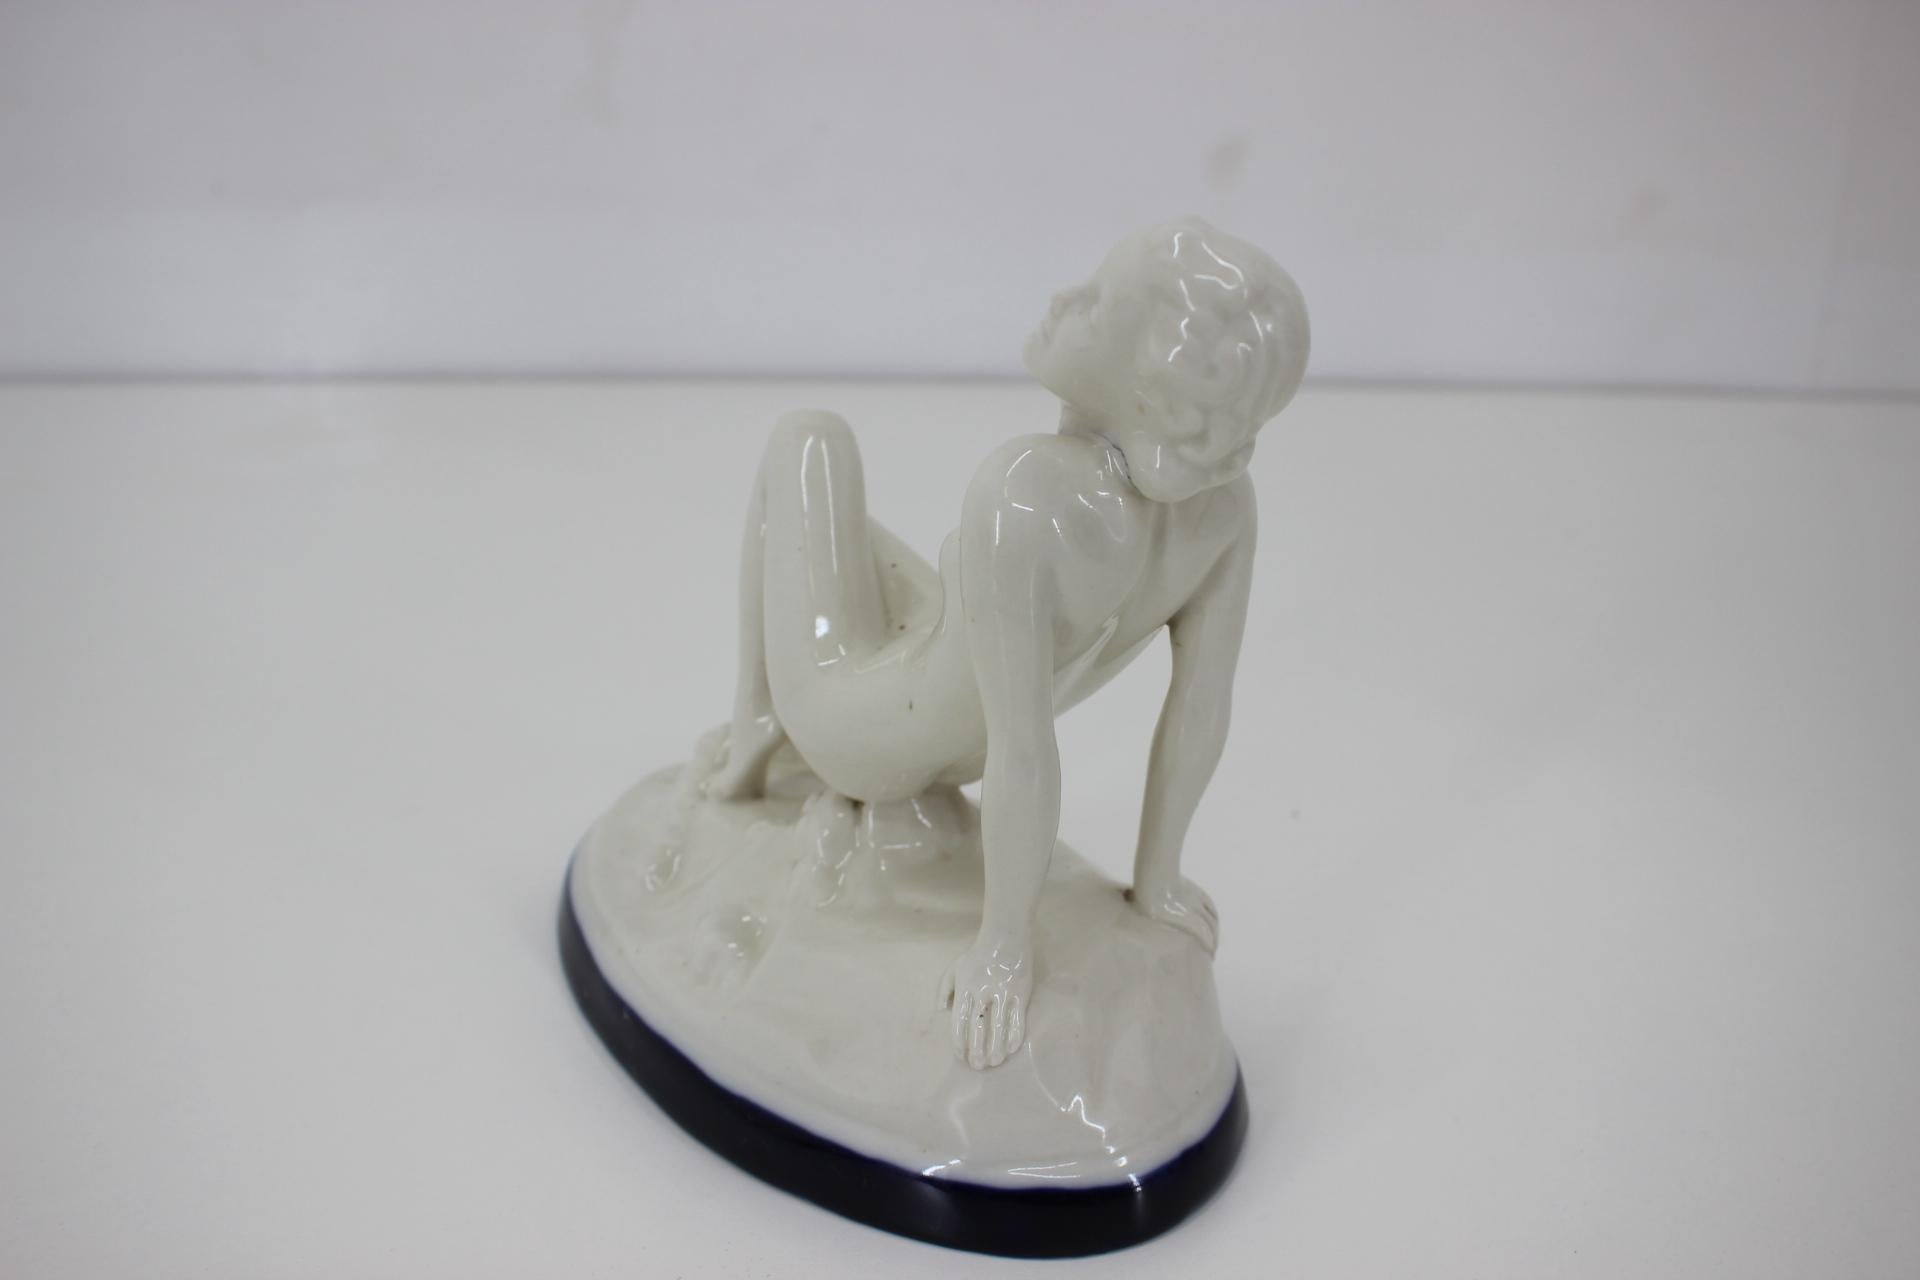 Czech Art Deco Design Ceramic Sculpture Nude Sitting Woman, 1930s